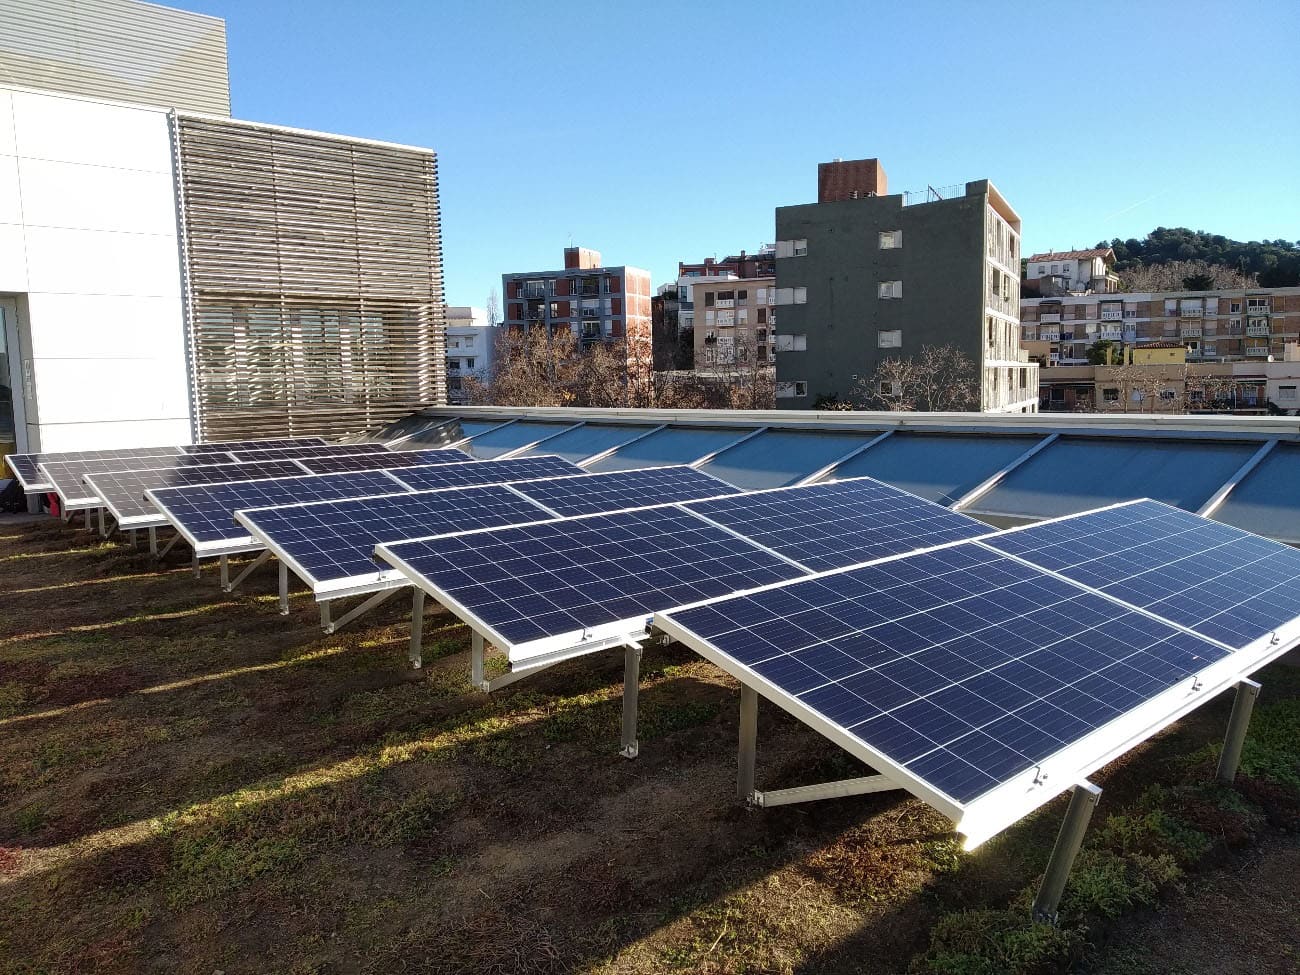 Estructuras placas paneles solares fotovoltaicos bibilioteca Vallcarca en Barcelona